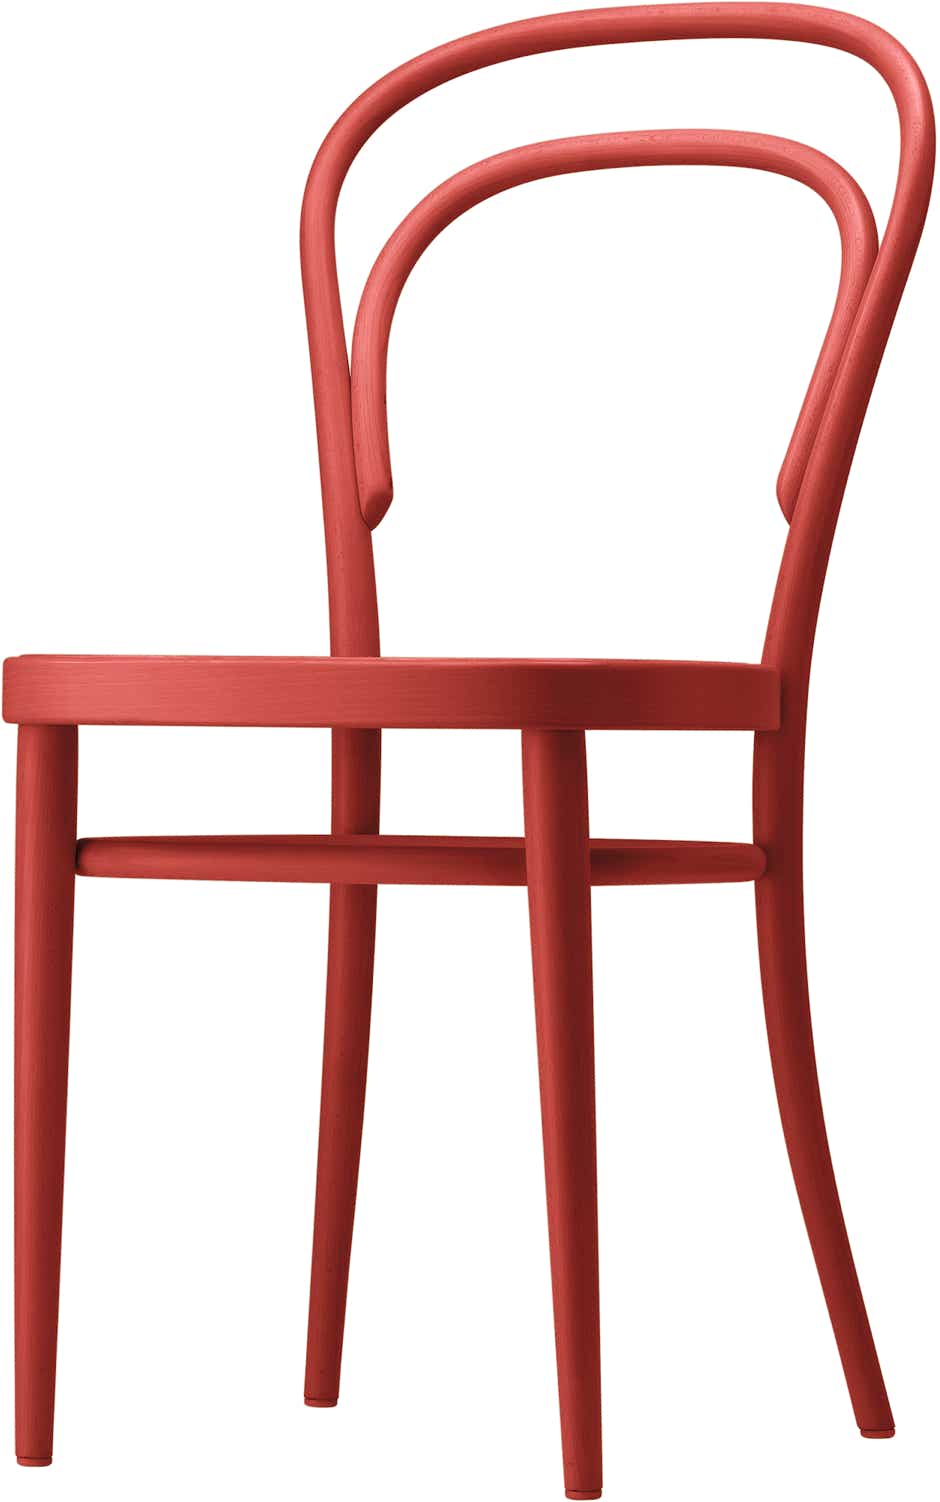 214 Chair